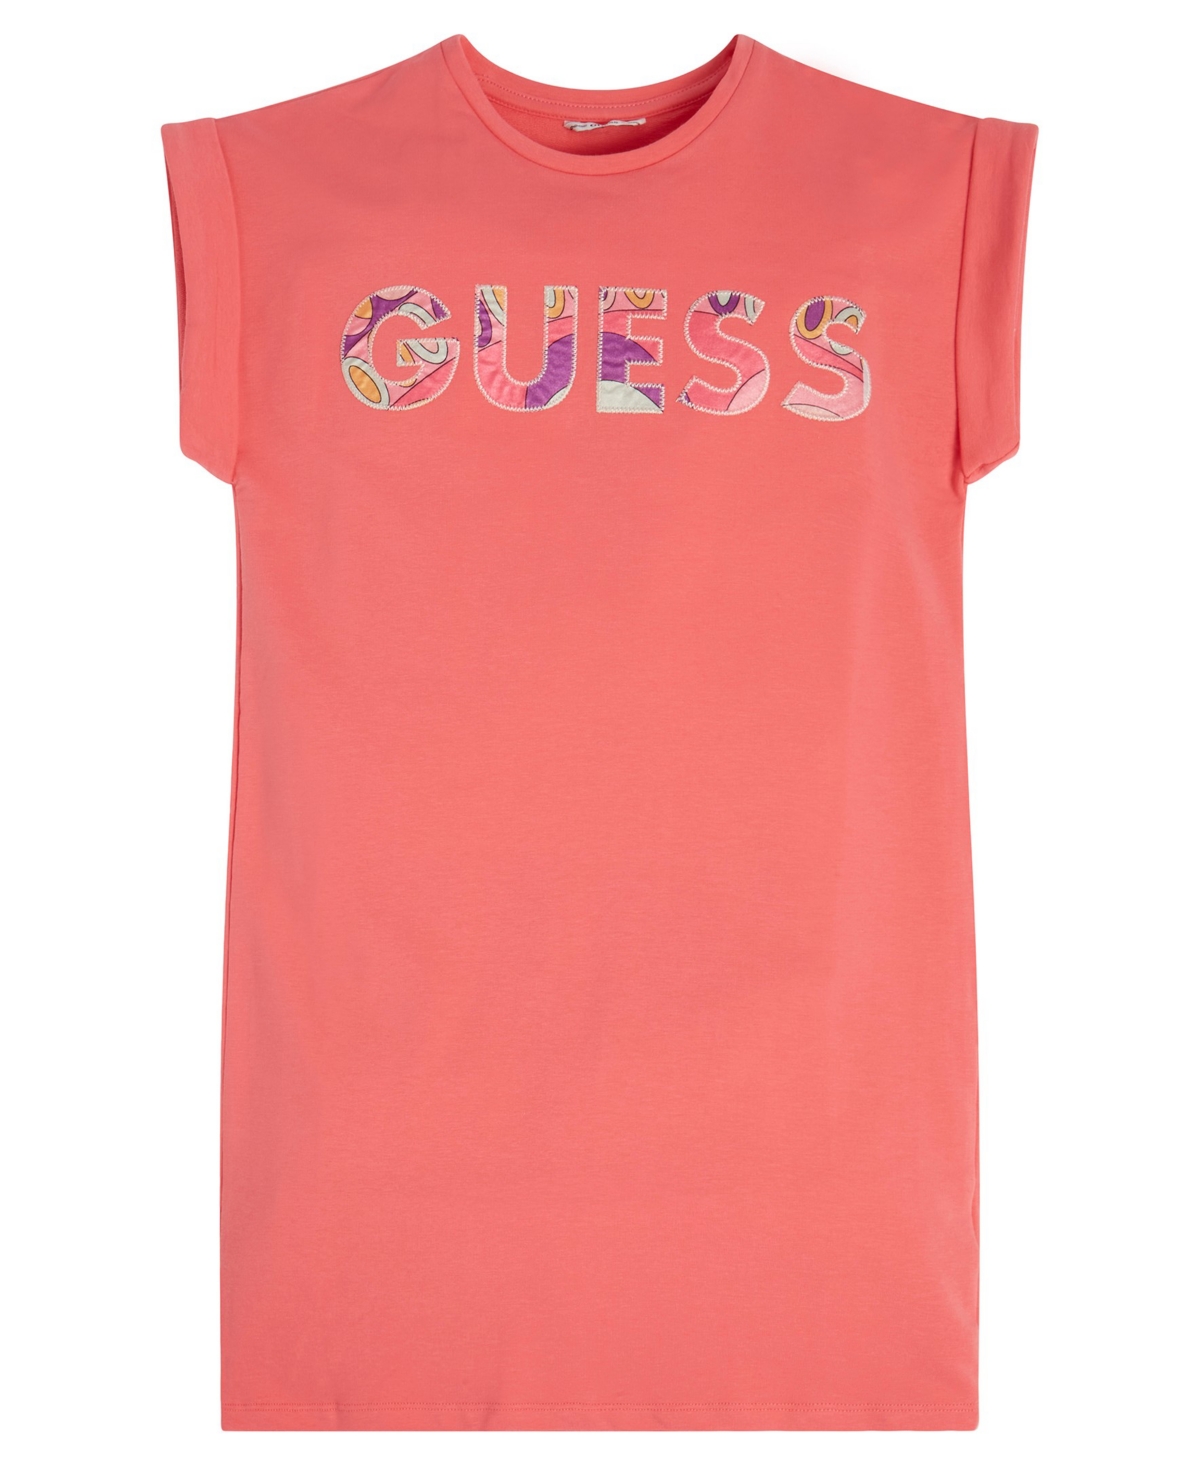 Guess Kids' Girls Pink Cotton Logo T-shirt Dress